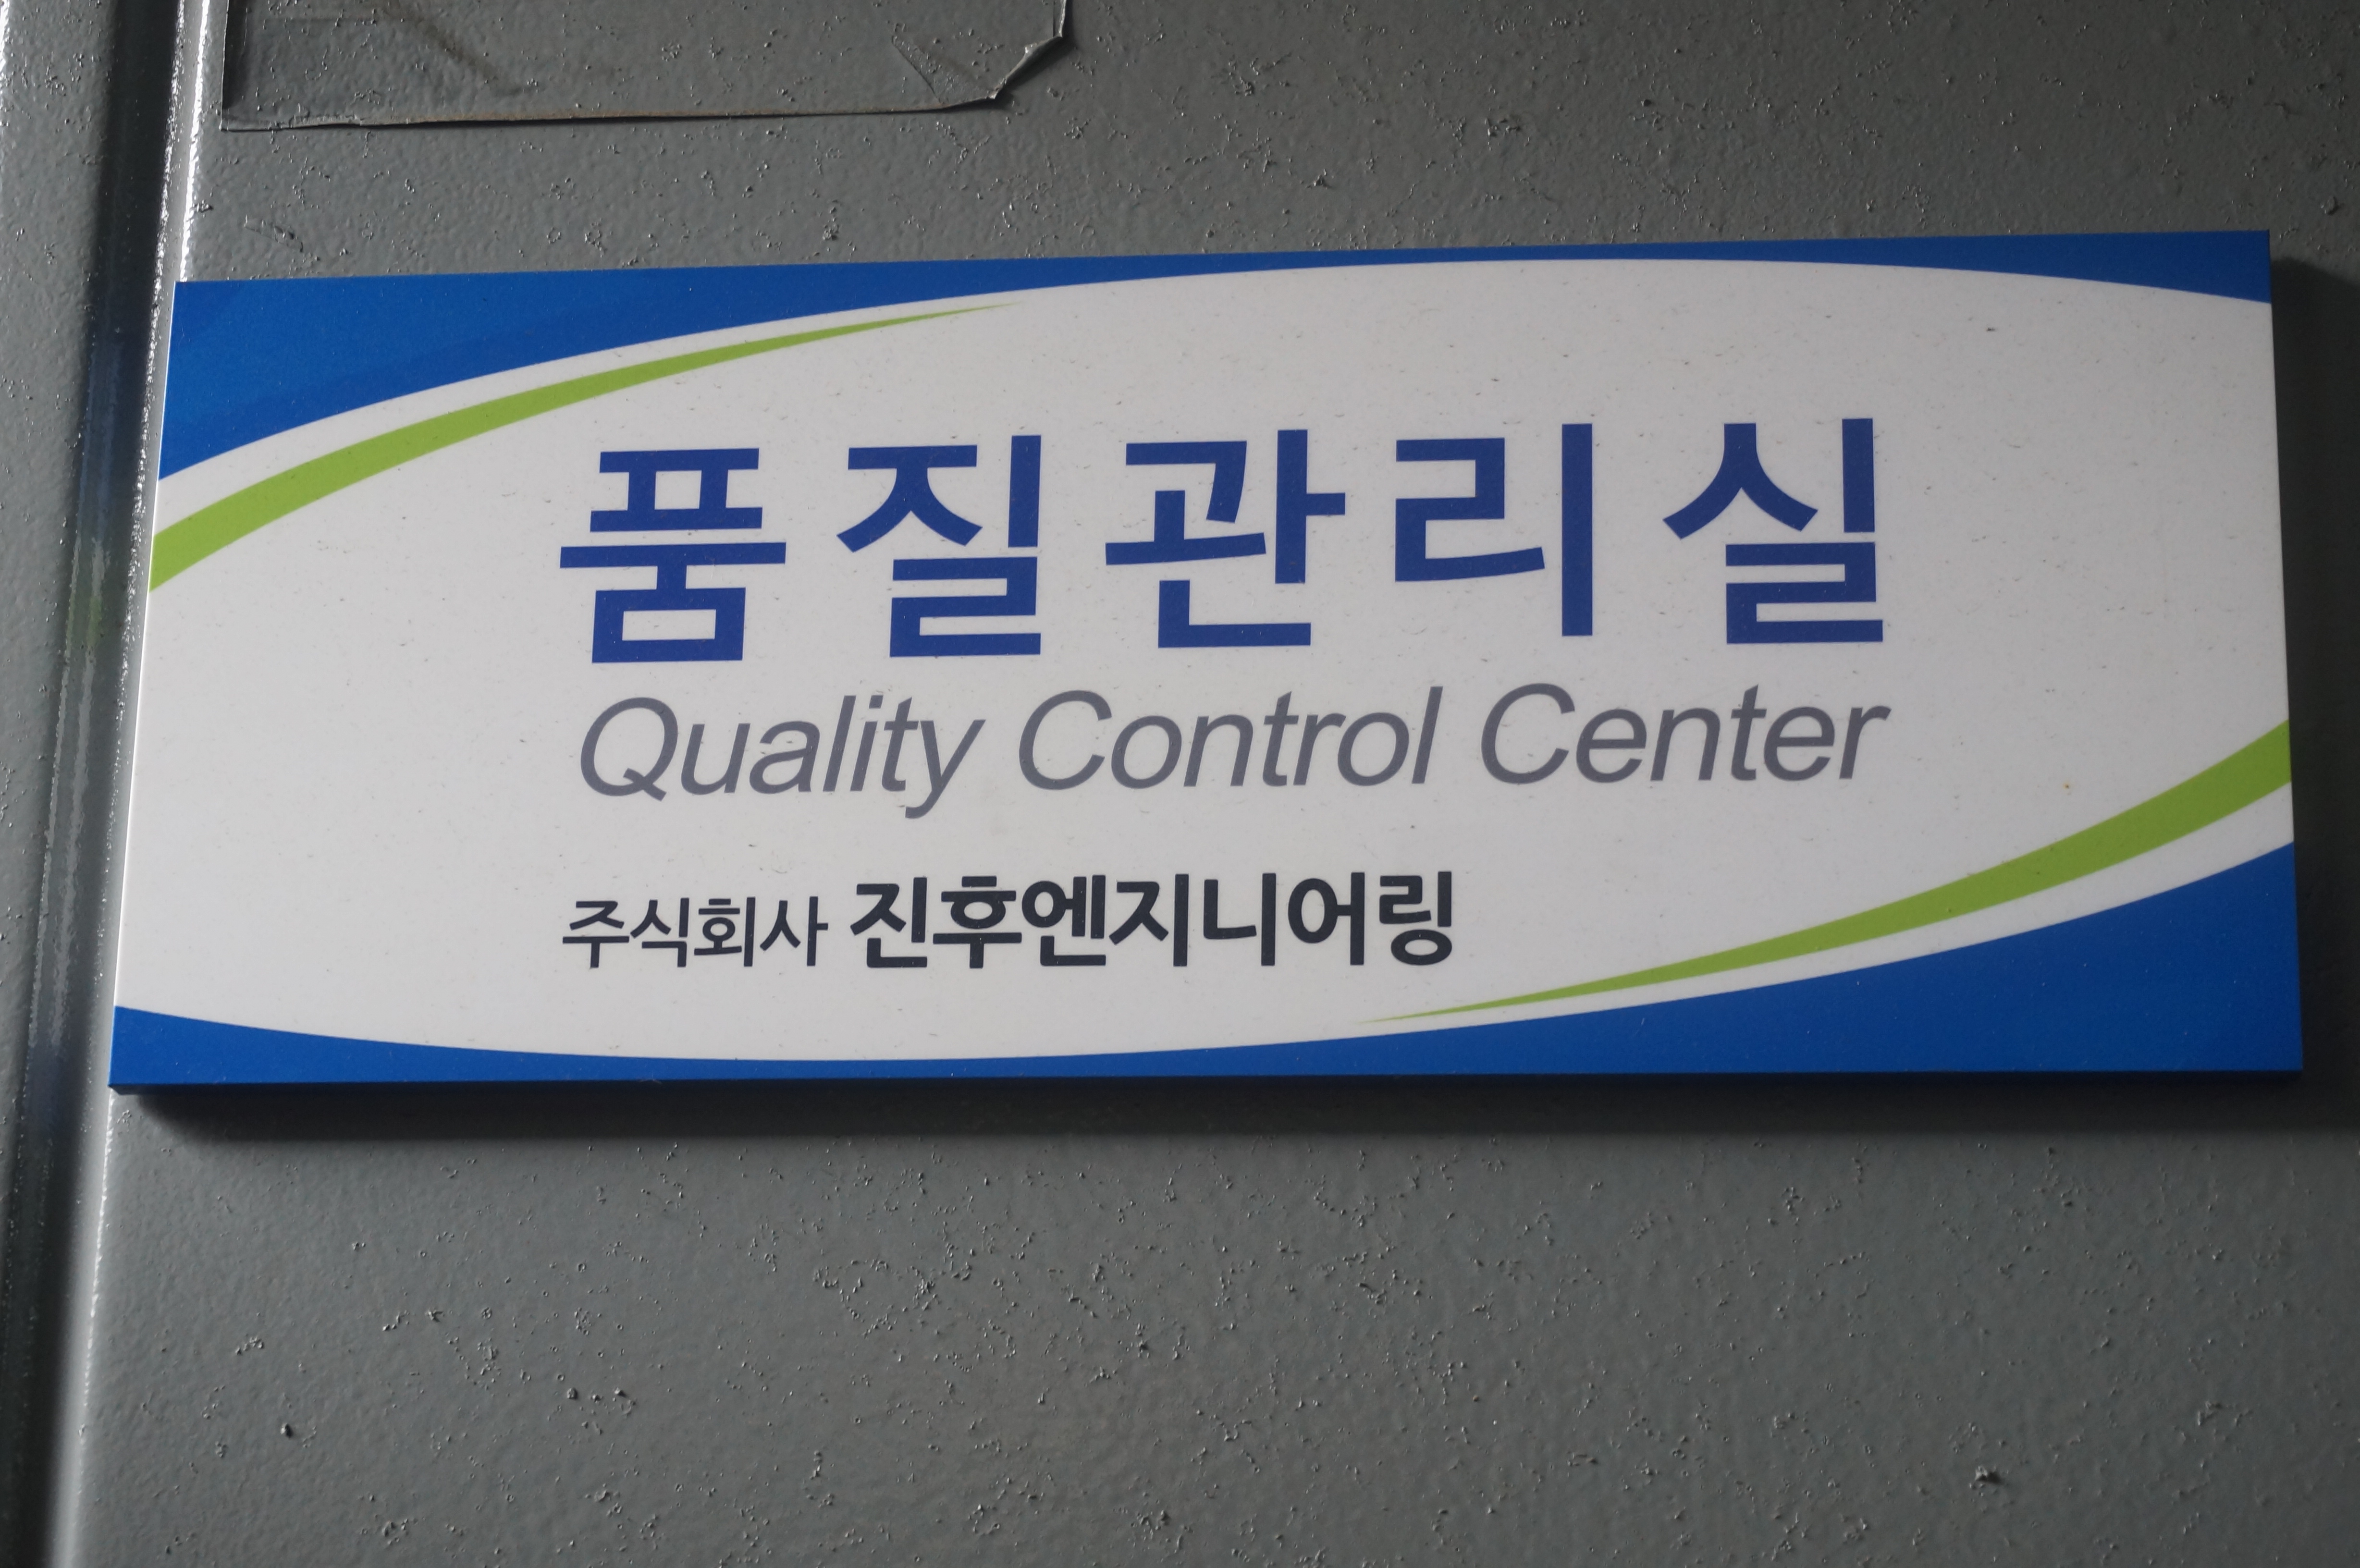 Quality Control Center